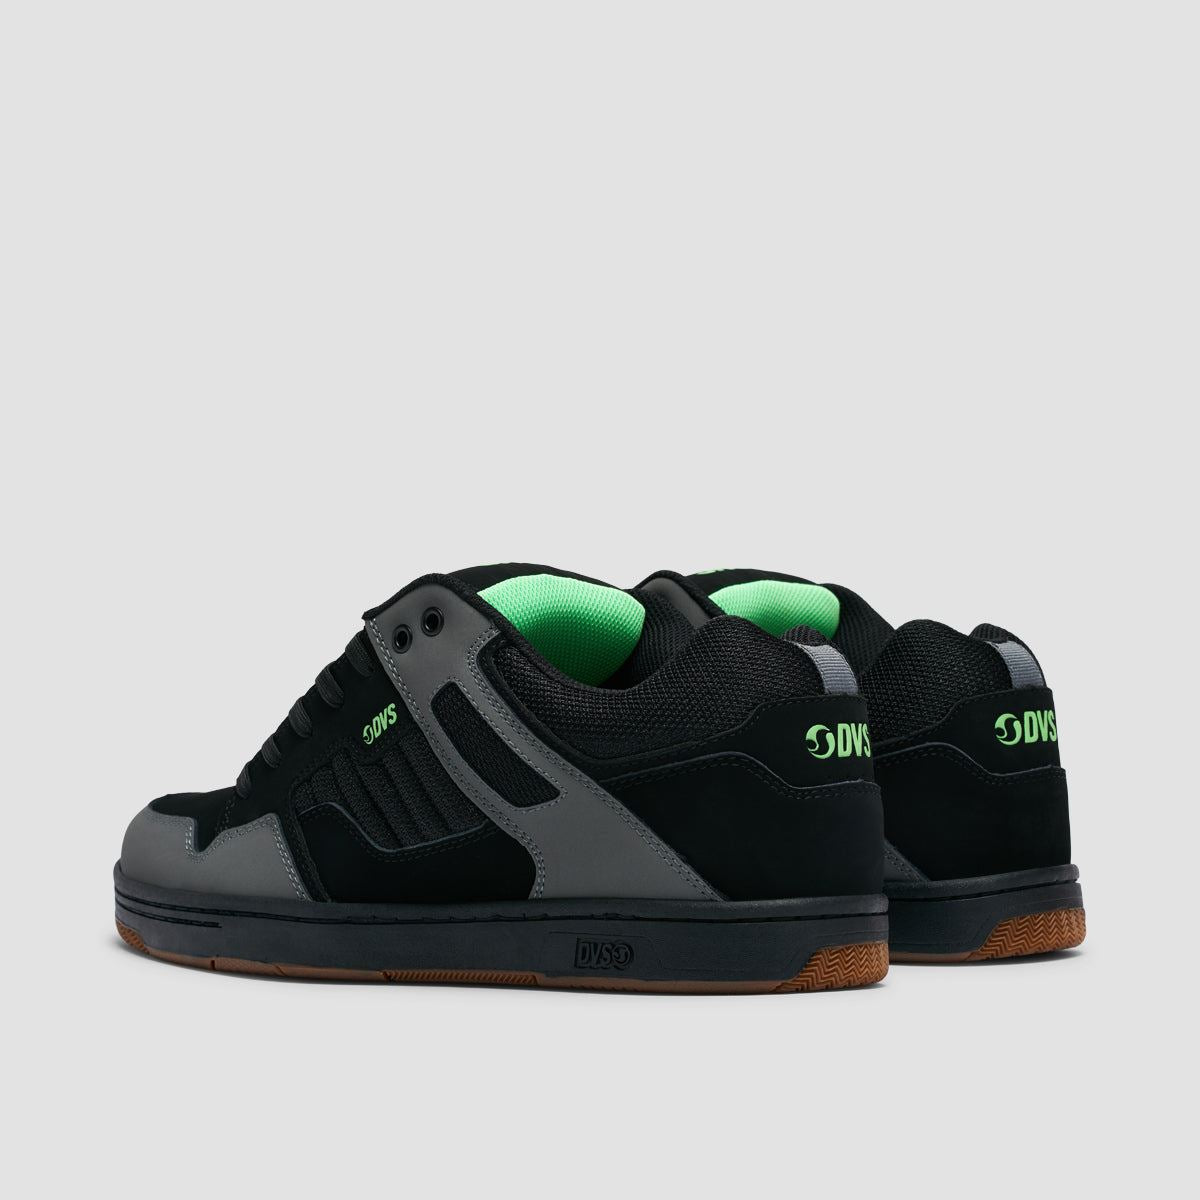 DVS Enduro 125 Shoes - Charcoal/Black/Lime Nubuck